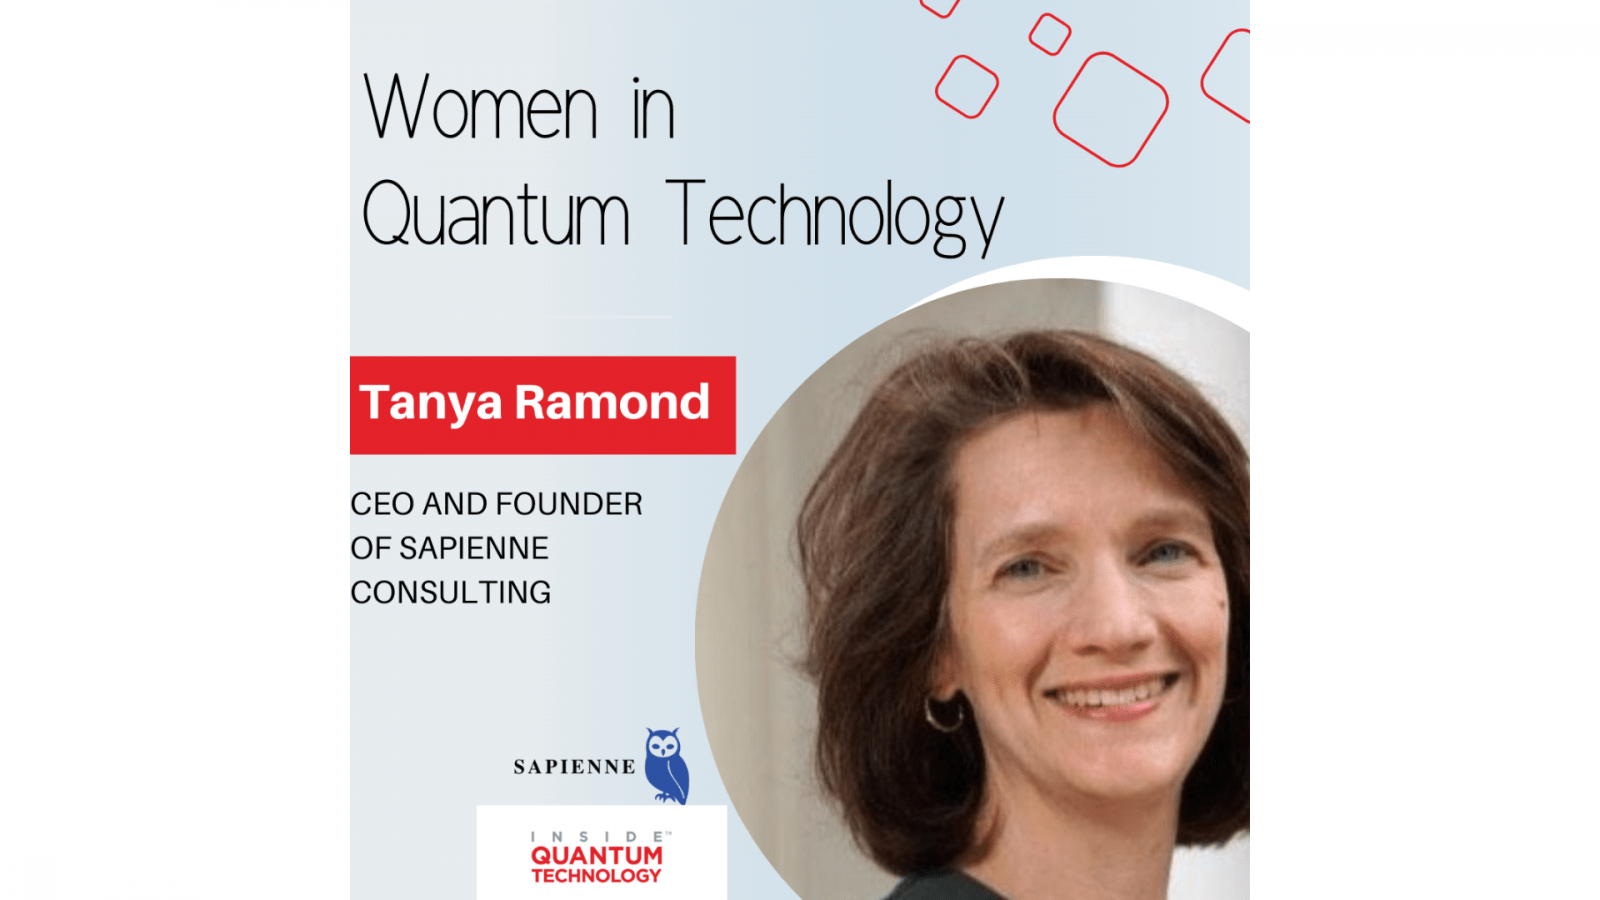 सैपिएन कंसल्टिंग की सीईओ और संस्थापक तान्या रामोंड ने क्वांटम उद्योग में अपने इतिहास और यात्रा पर चर्चा की।